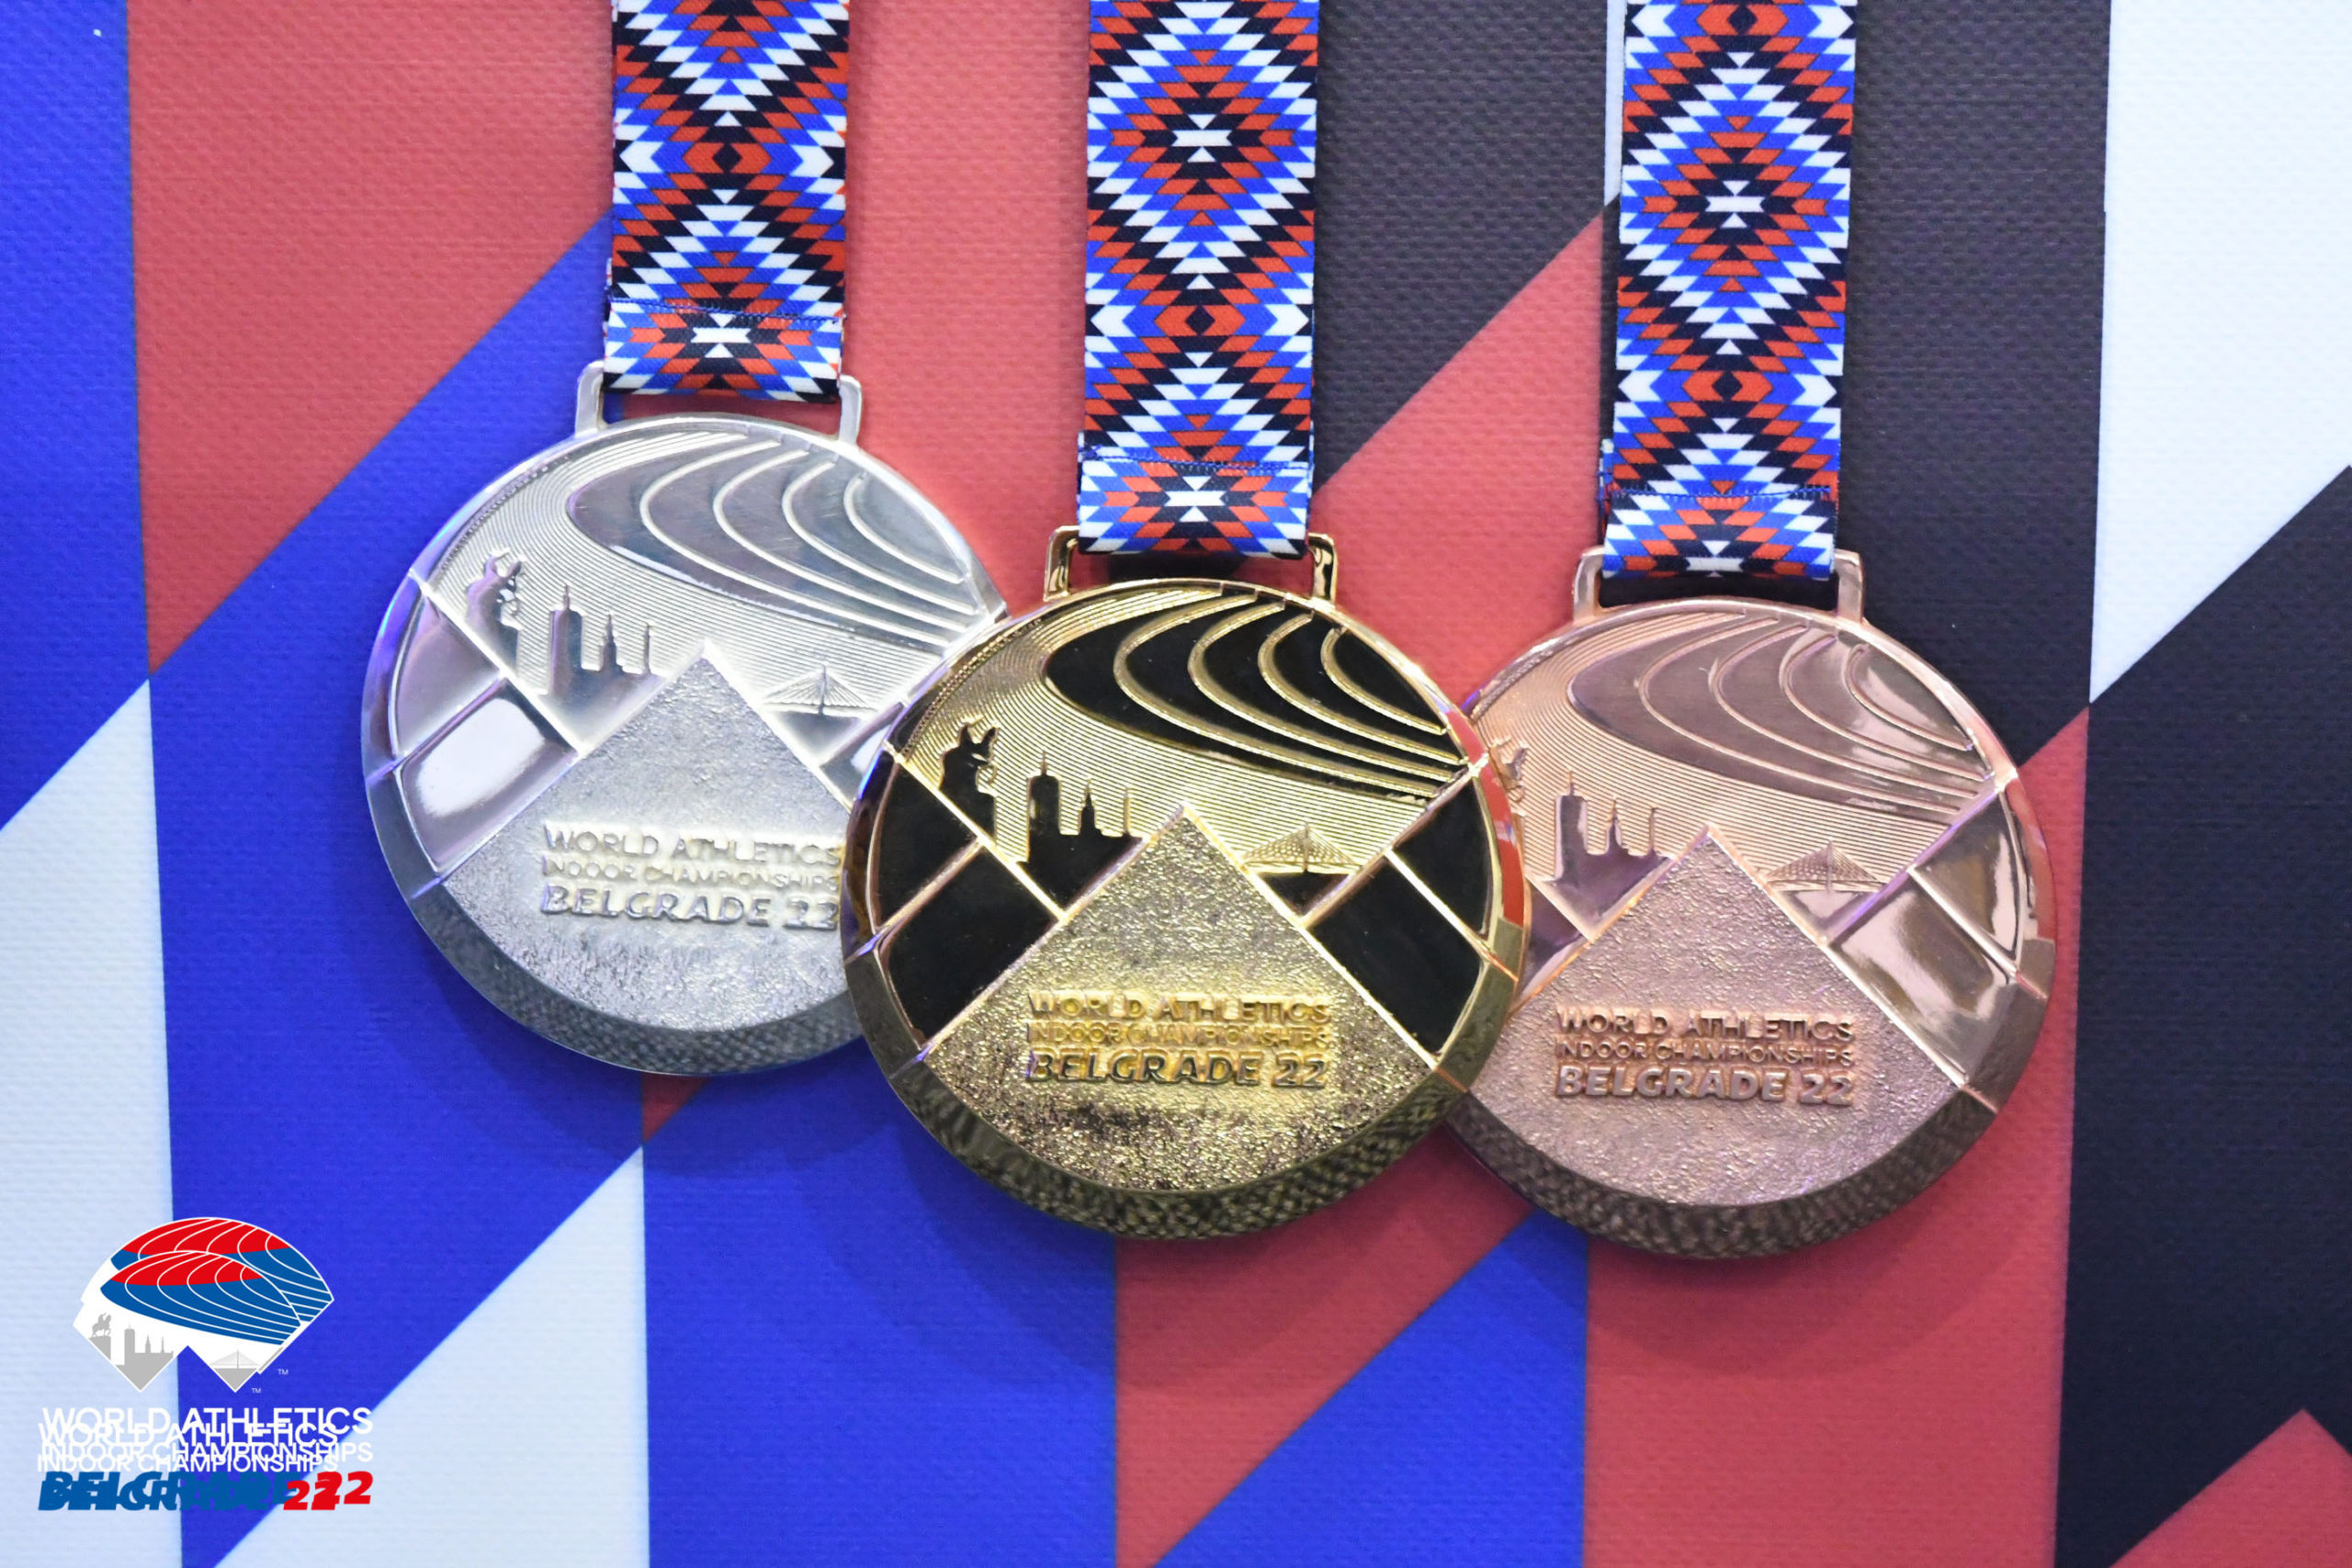 Predstavljen dizajn medalja: Svetsko  atletsko  prvenstvo u dvorani 'Beograd 22'